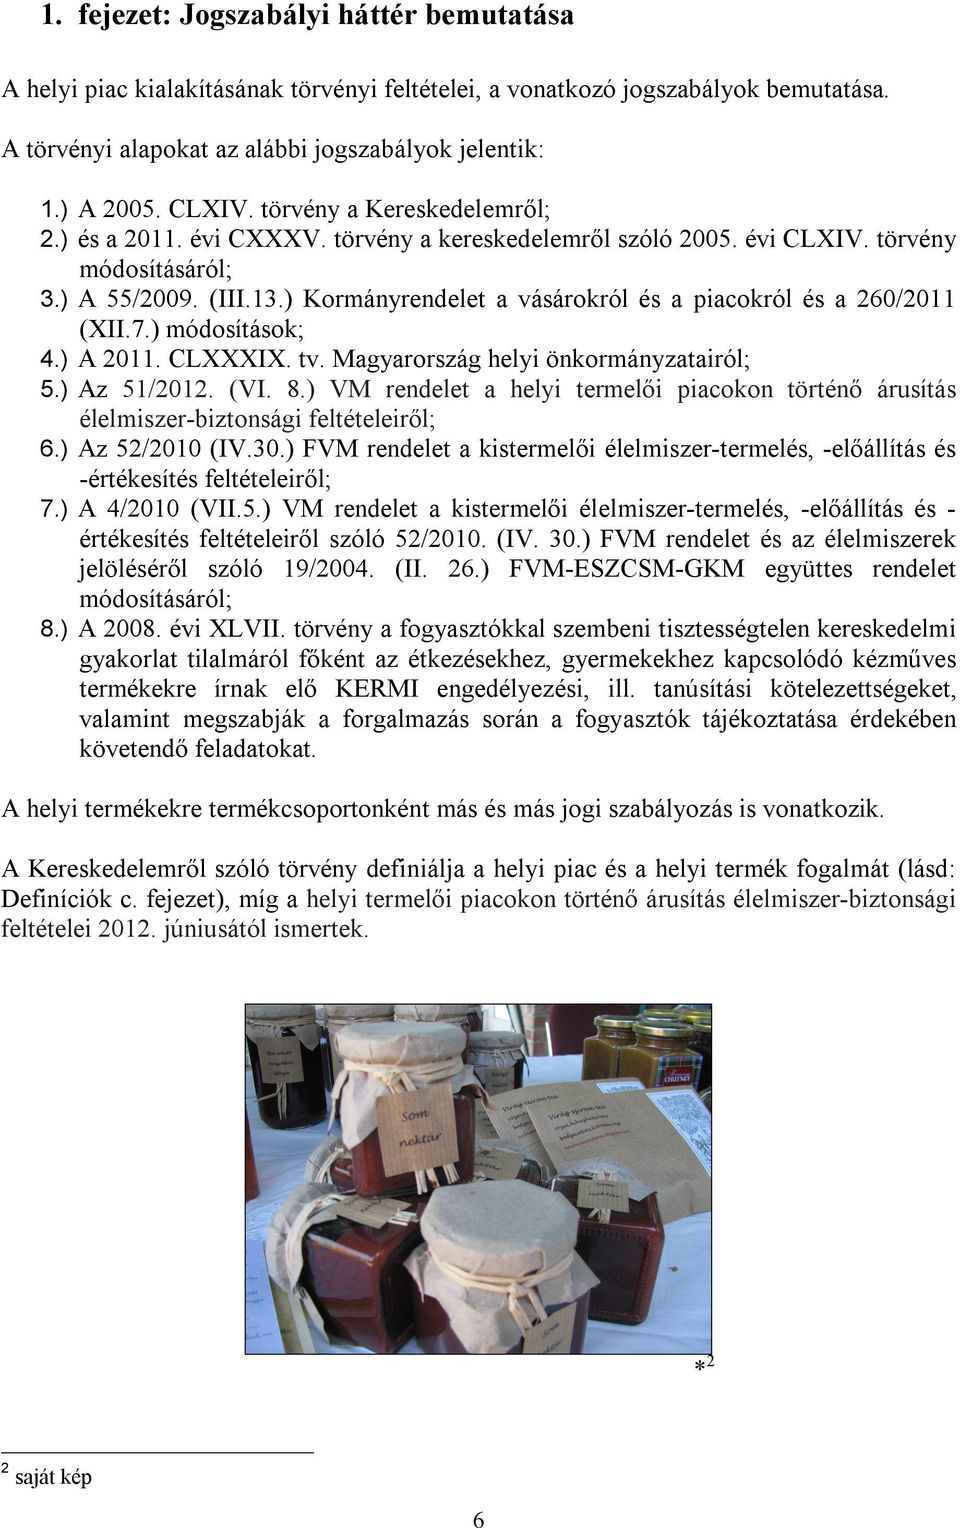 ) Kormányrendelet a vásárokról és a piacokról és a 260/2011 (XII.7.) módosítások; 4.) A 2011. CLXXXIX. tv. Magyarország helyi önkormányzatairól; 5.) Az 51/2012. (VI. 8.